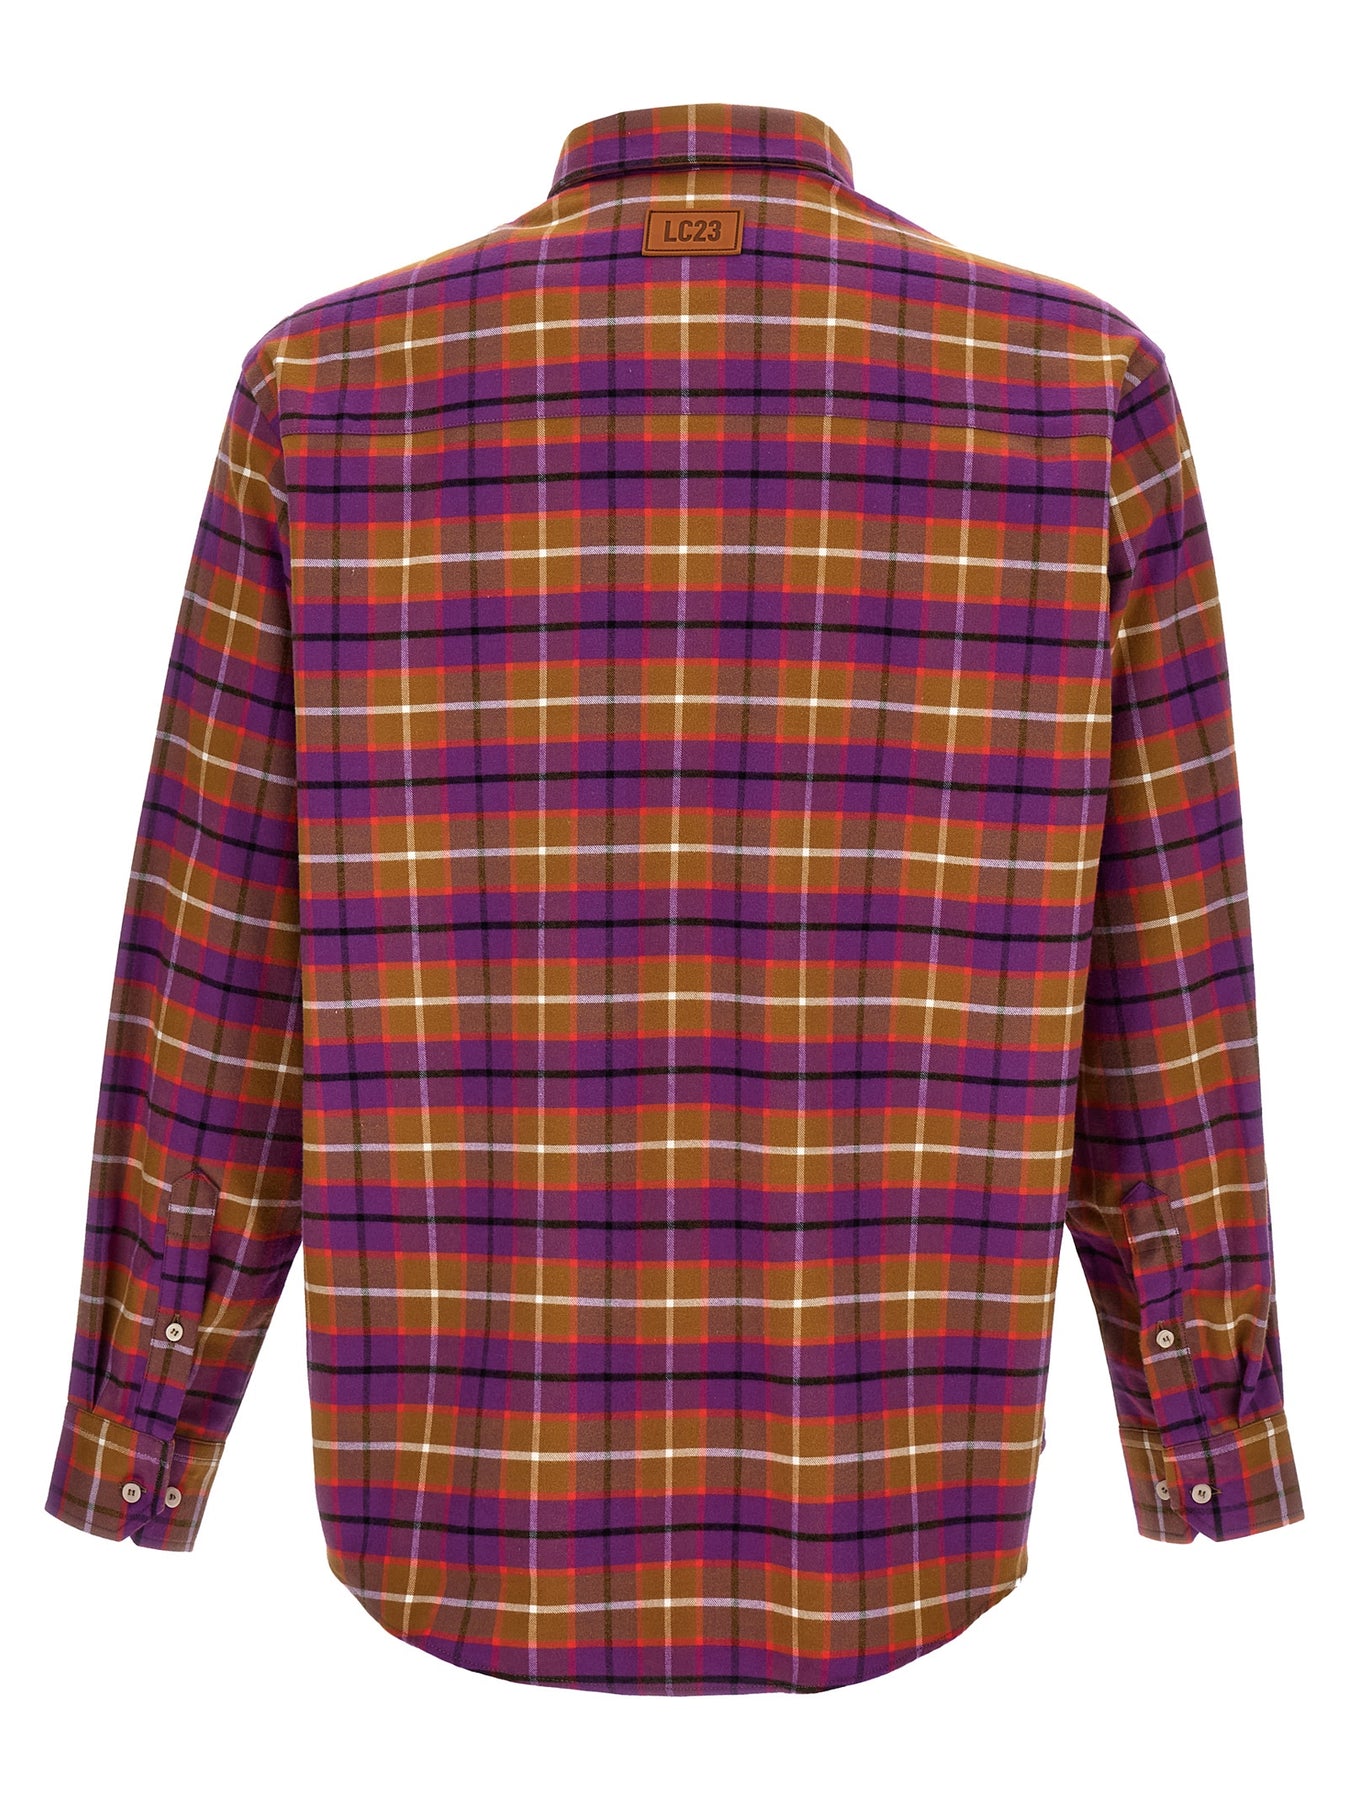 Shop Lc23 Check Flannel Shirt, Blouse